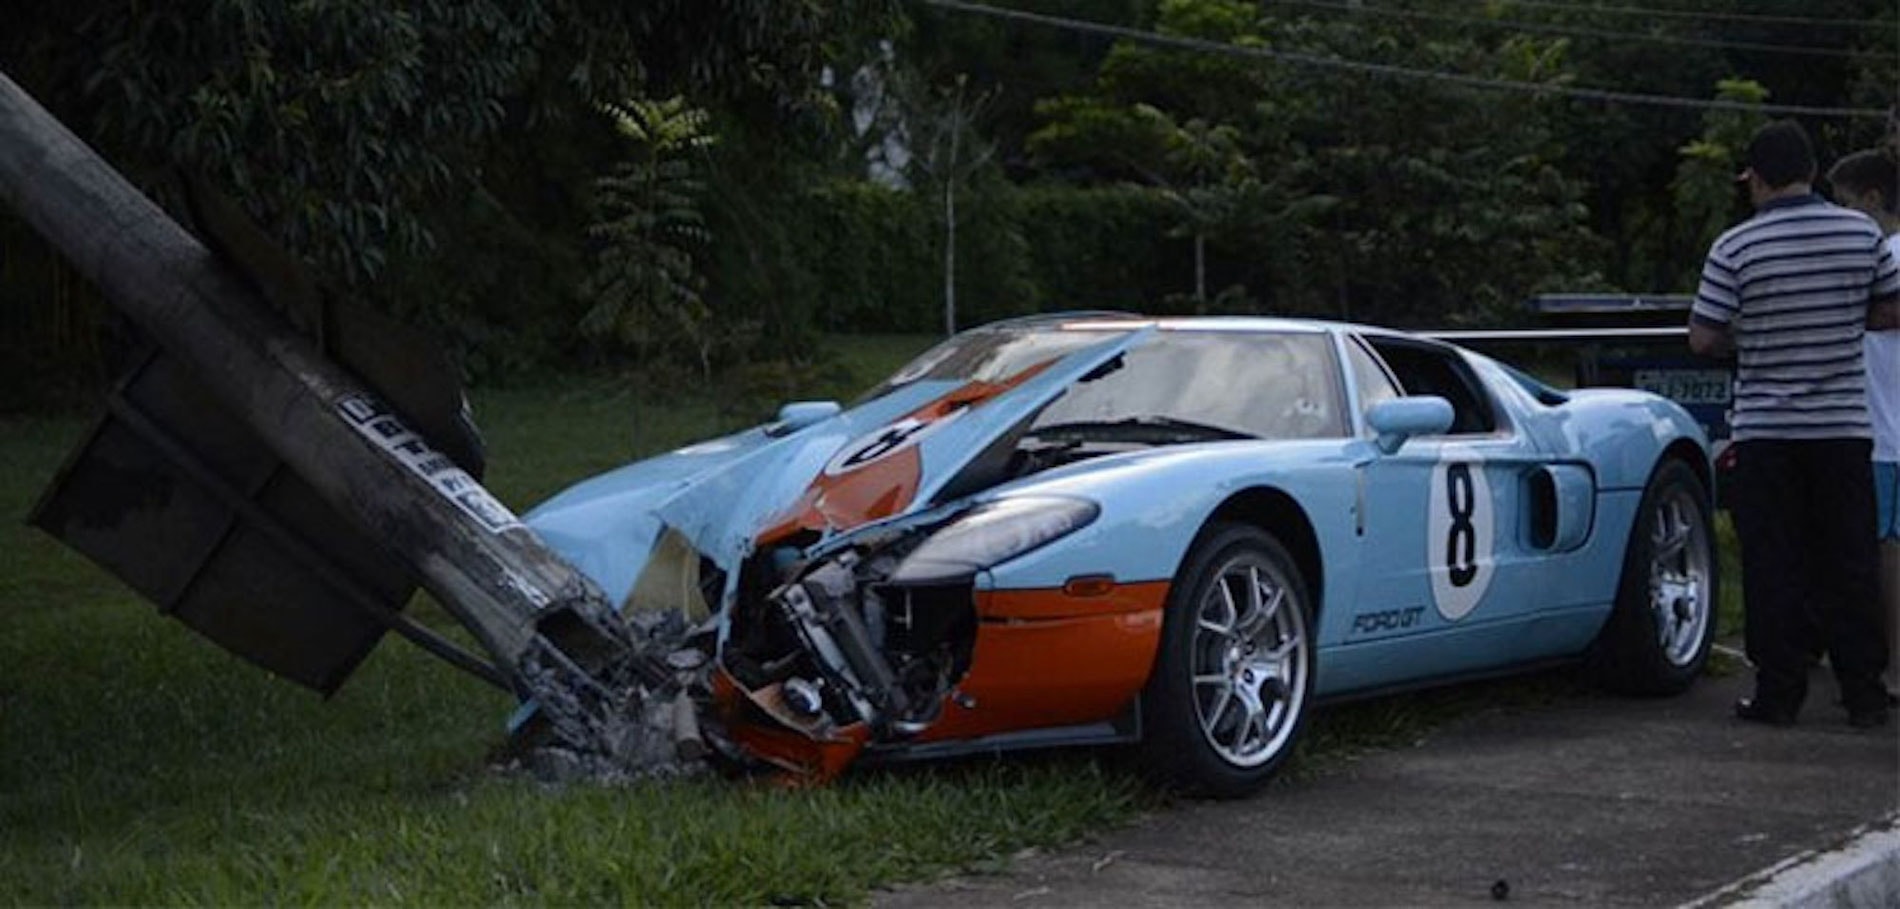 Покупатель заплатил 716 тысяч долларов за Ford GT, разбил его несколько недель спустя и узнал, что он разбивался и раньше